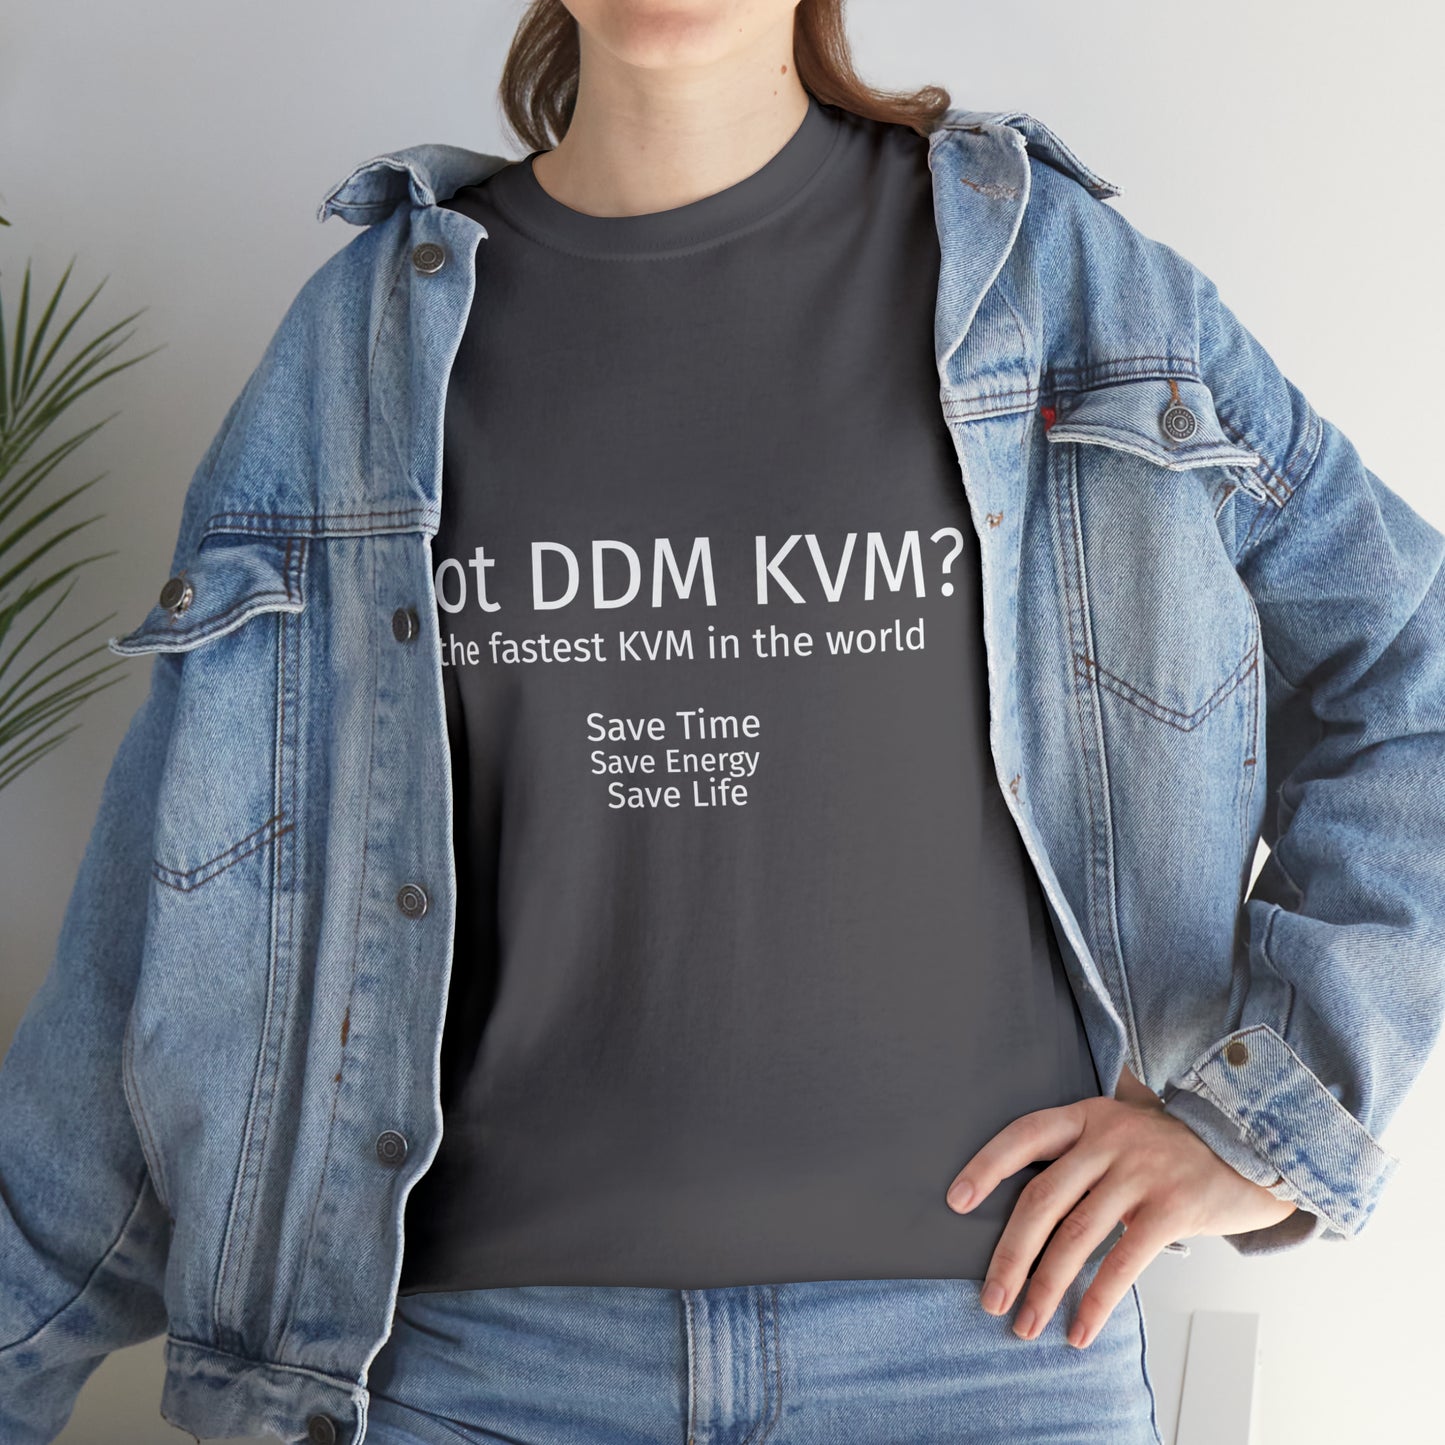 Got DDM KVM? ConnectPRO Unisex Heavy Cotton Tee